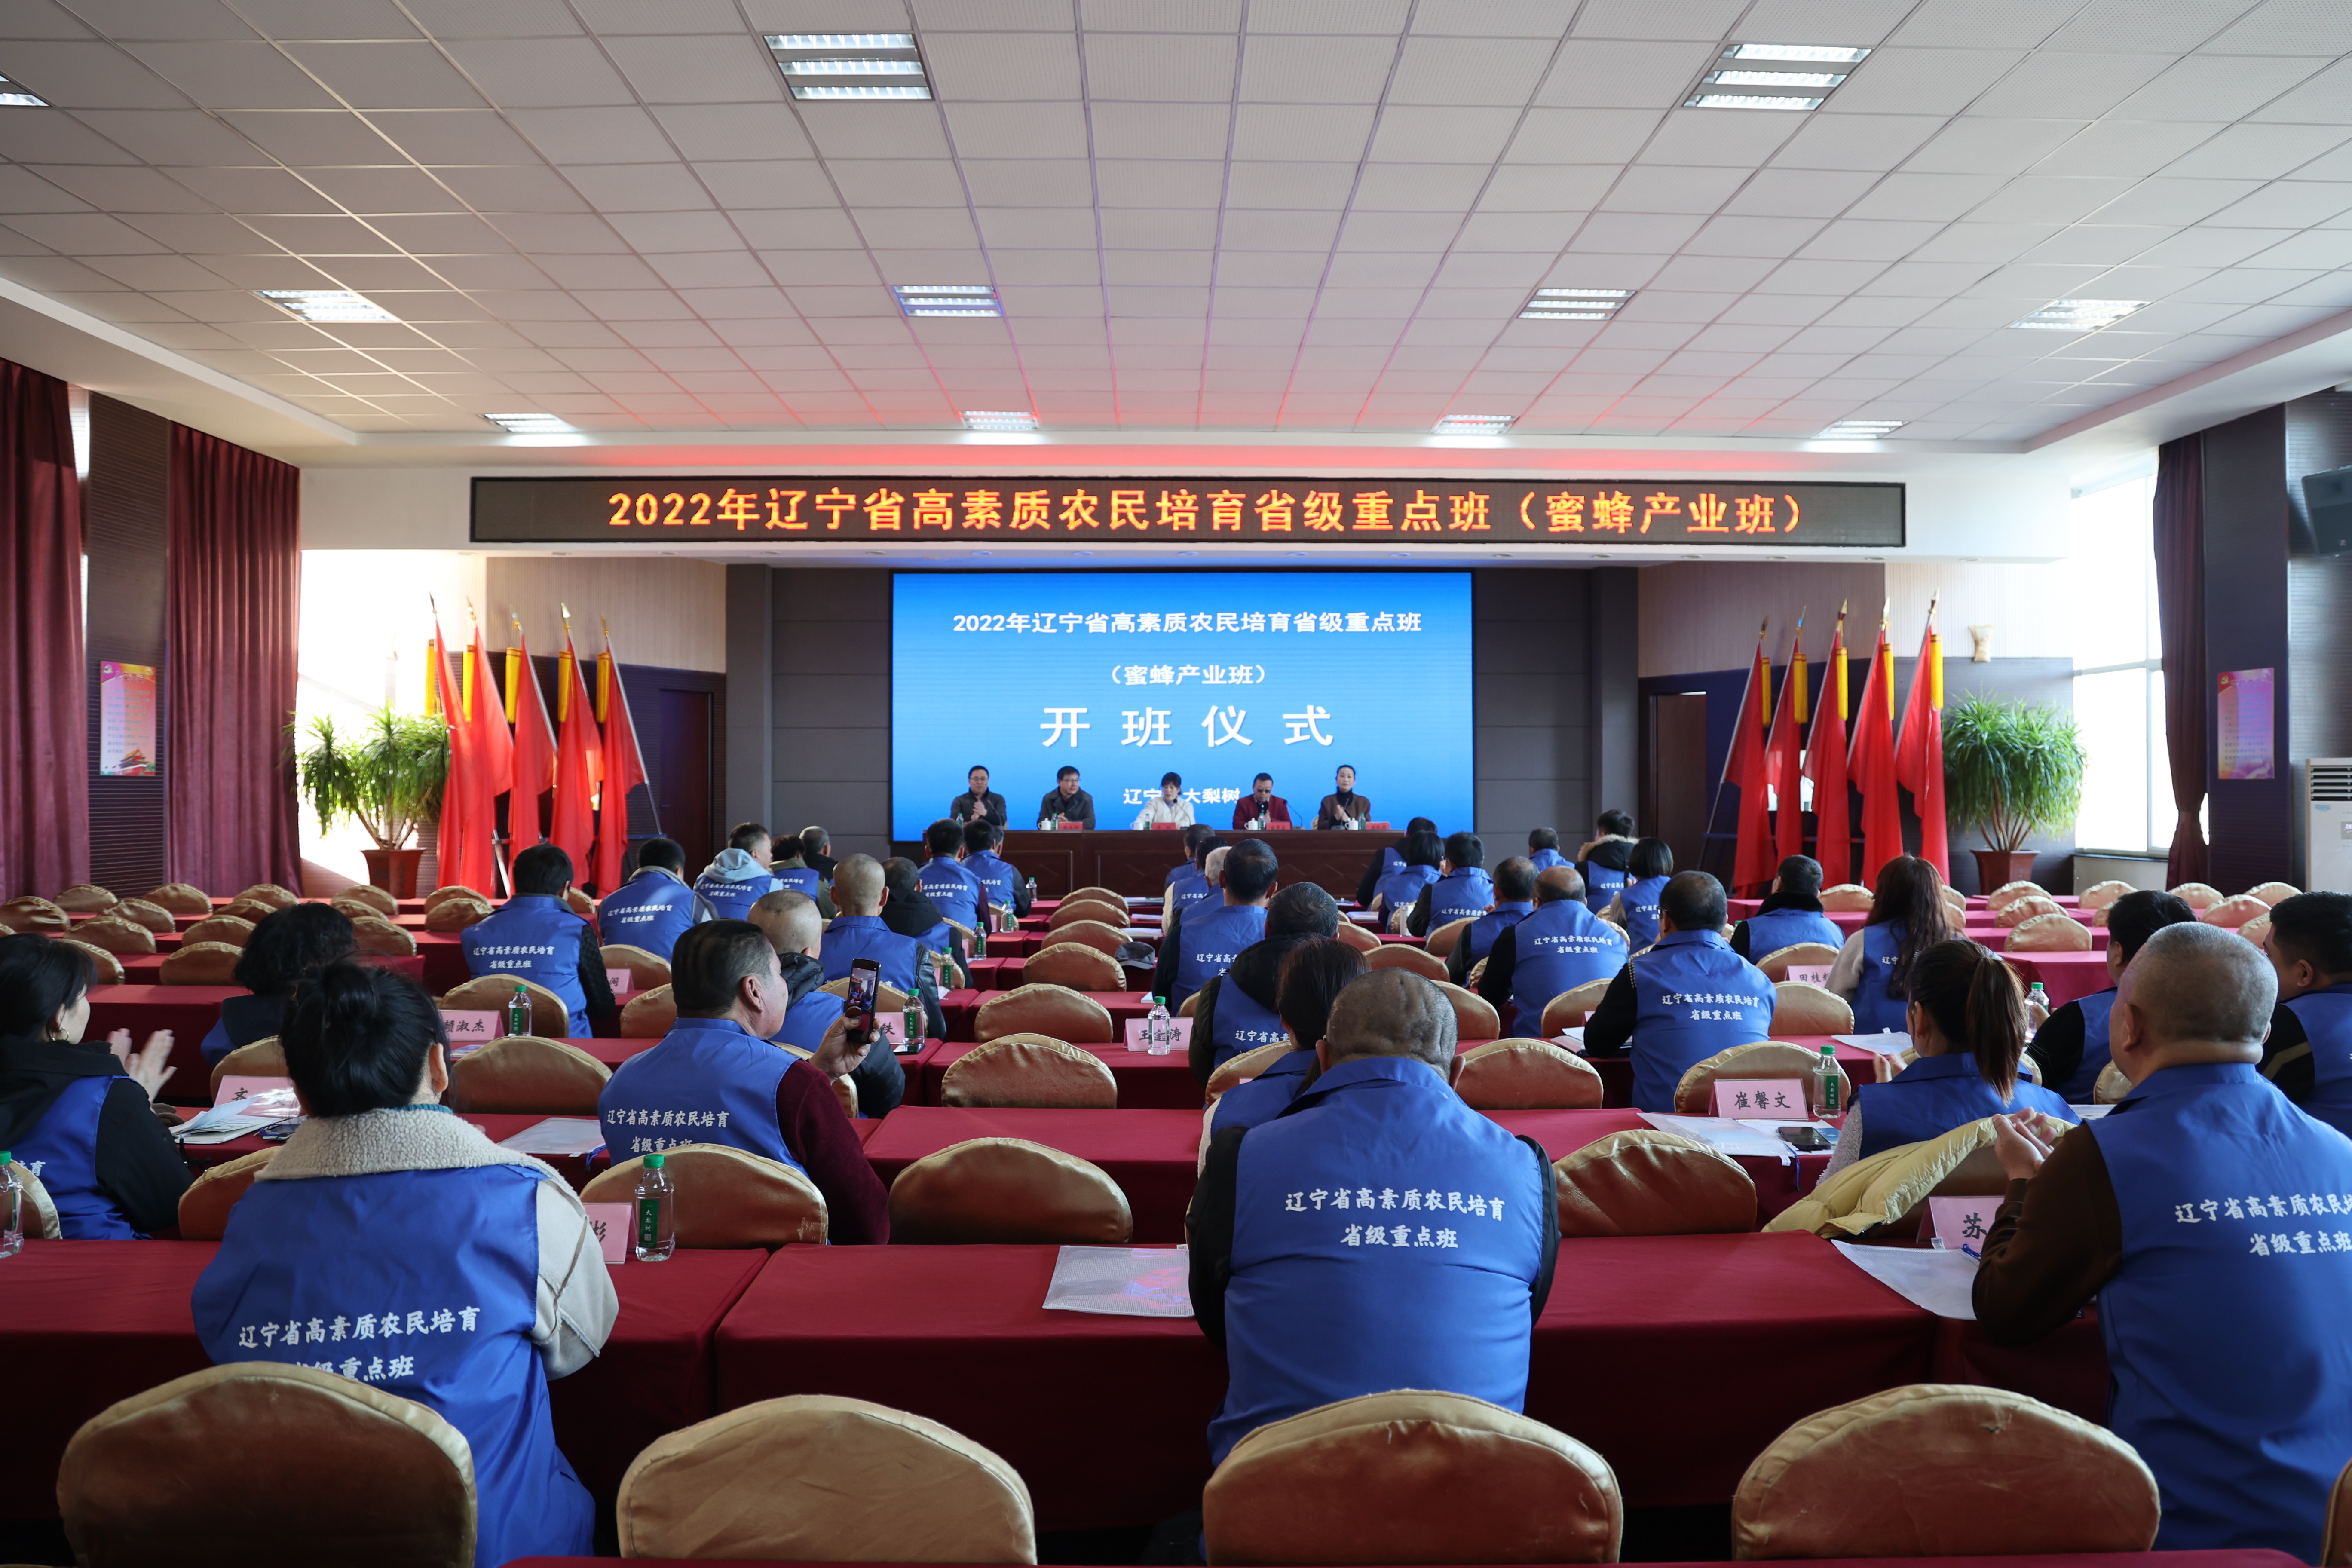 2022年遼寧省高素質農民培育省級重點班（蜜蜂產業班）圓滿結業